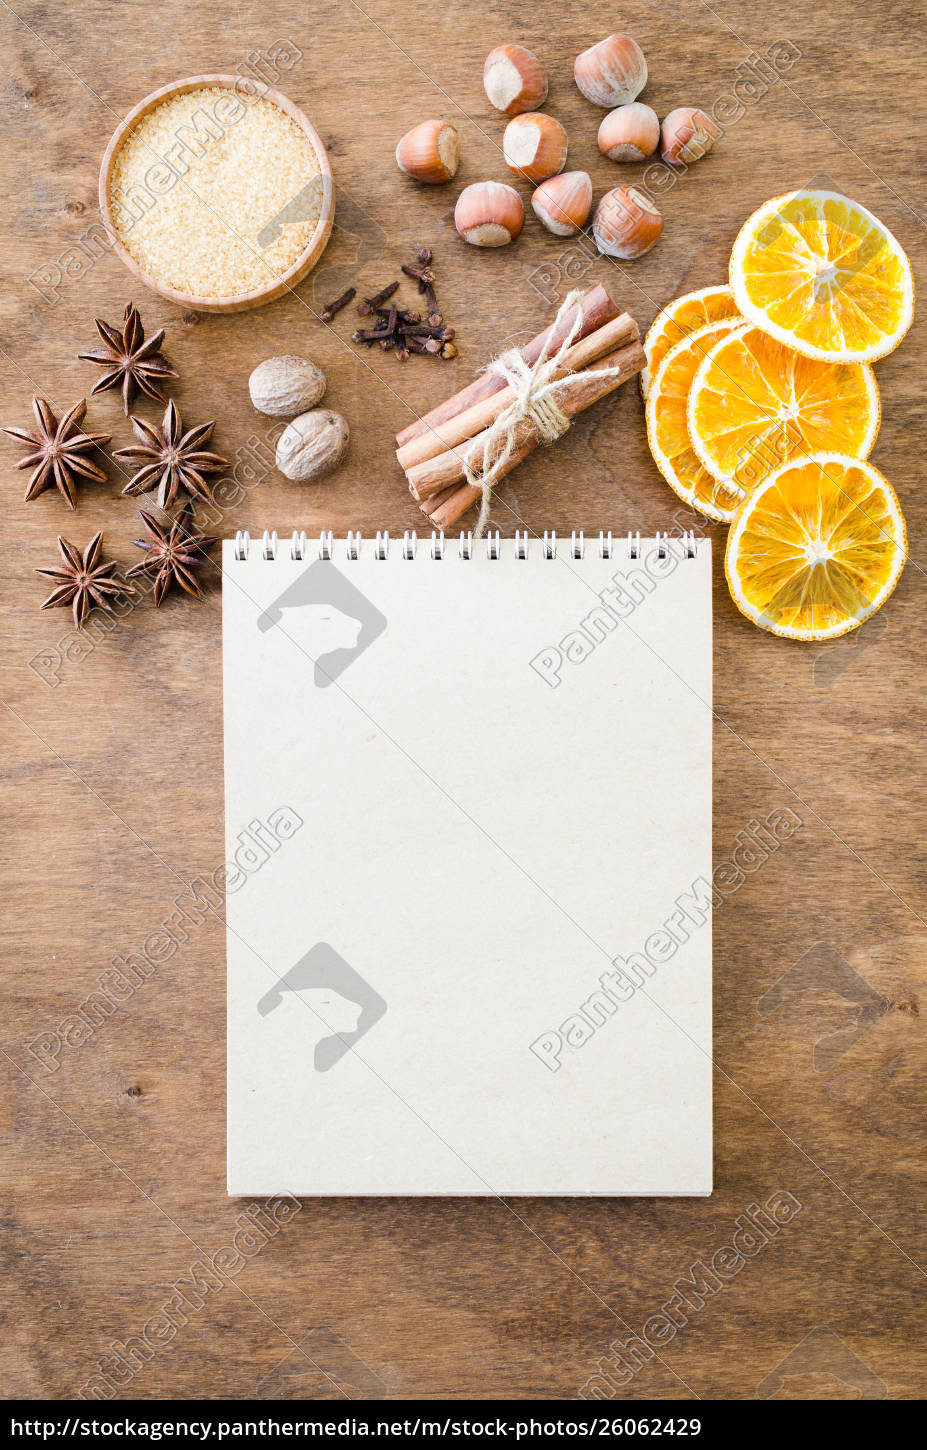 Quaderno per scrivere ricette o menu. Background - Foto stock #26062429